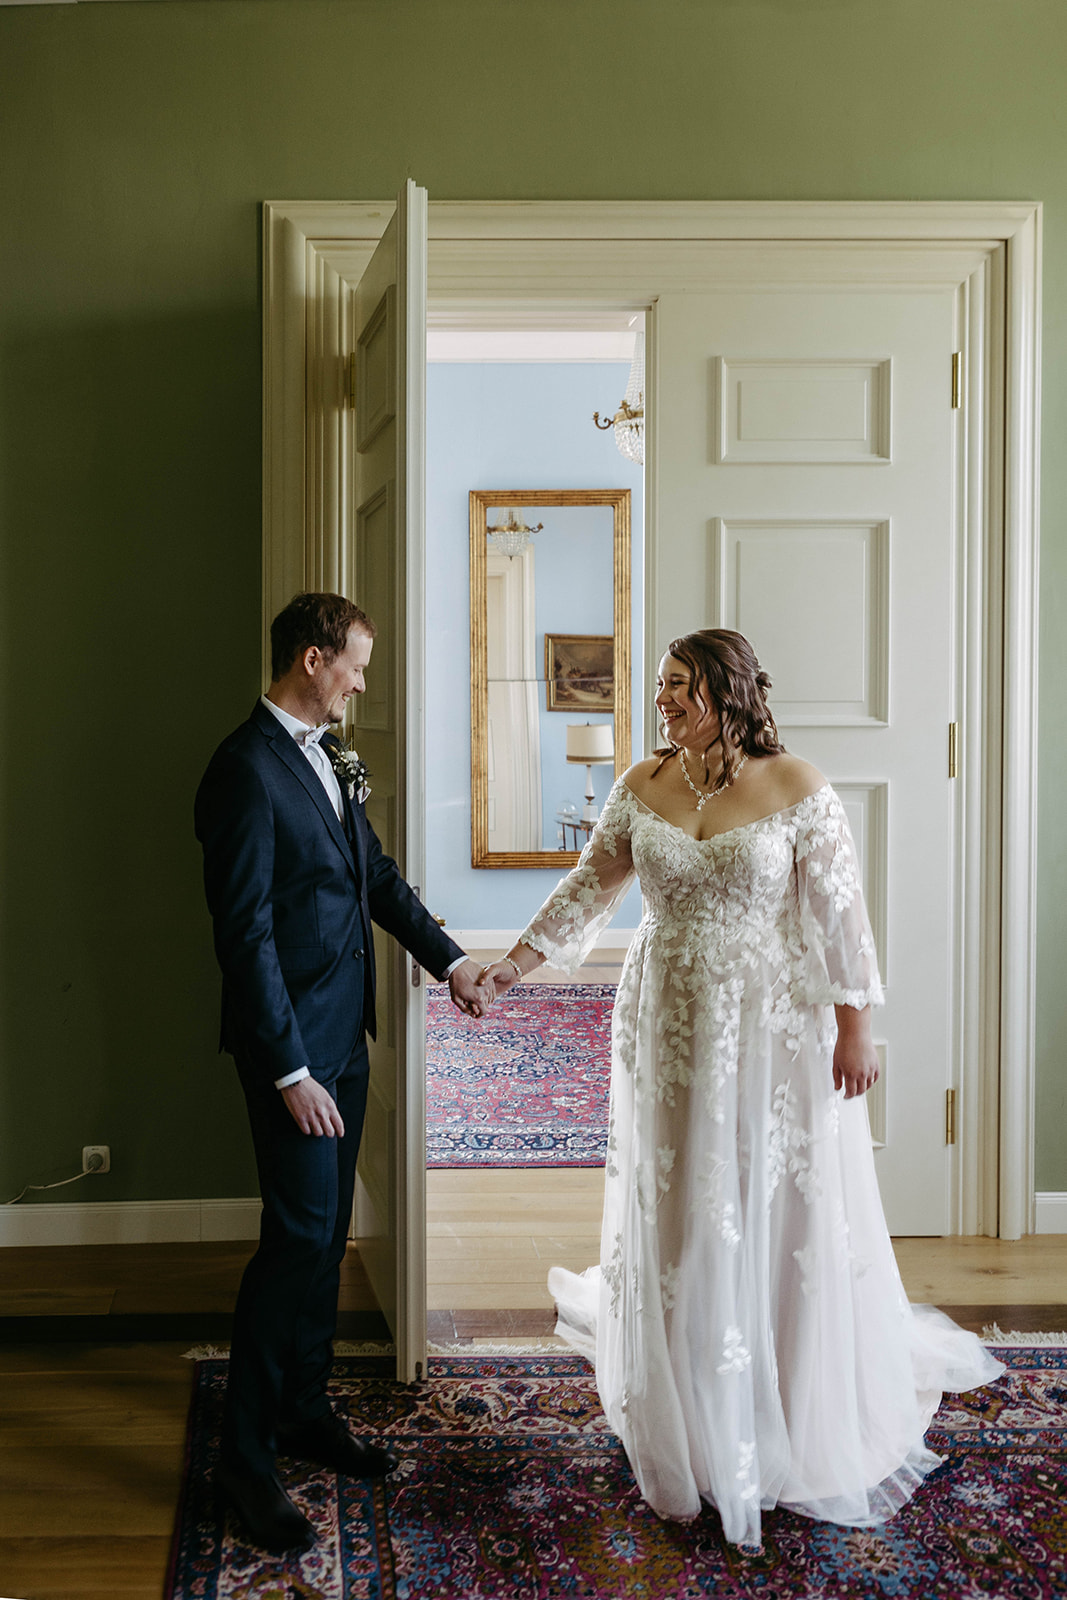 Herzergreifender Moment: Braut und Bräutigam sehen sich zum ersten Mal an diesem besonderen Tag im Schloss Jägersburg.